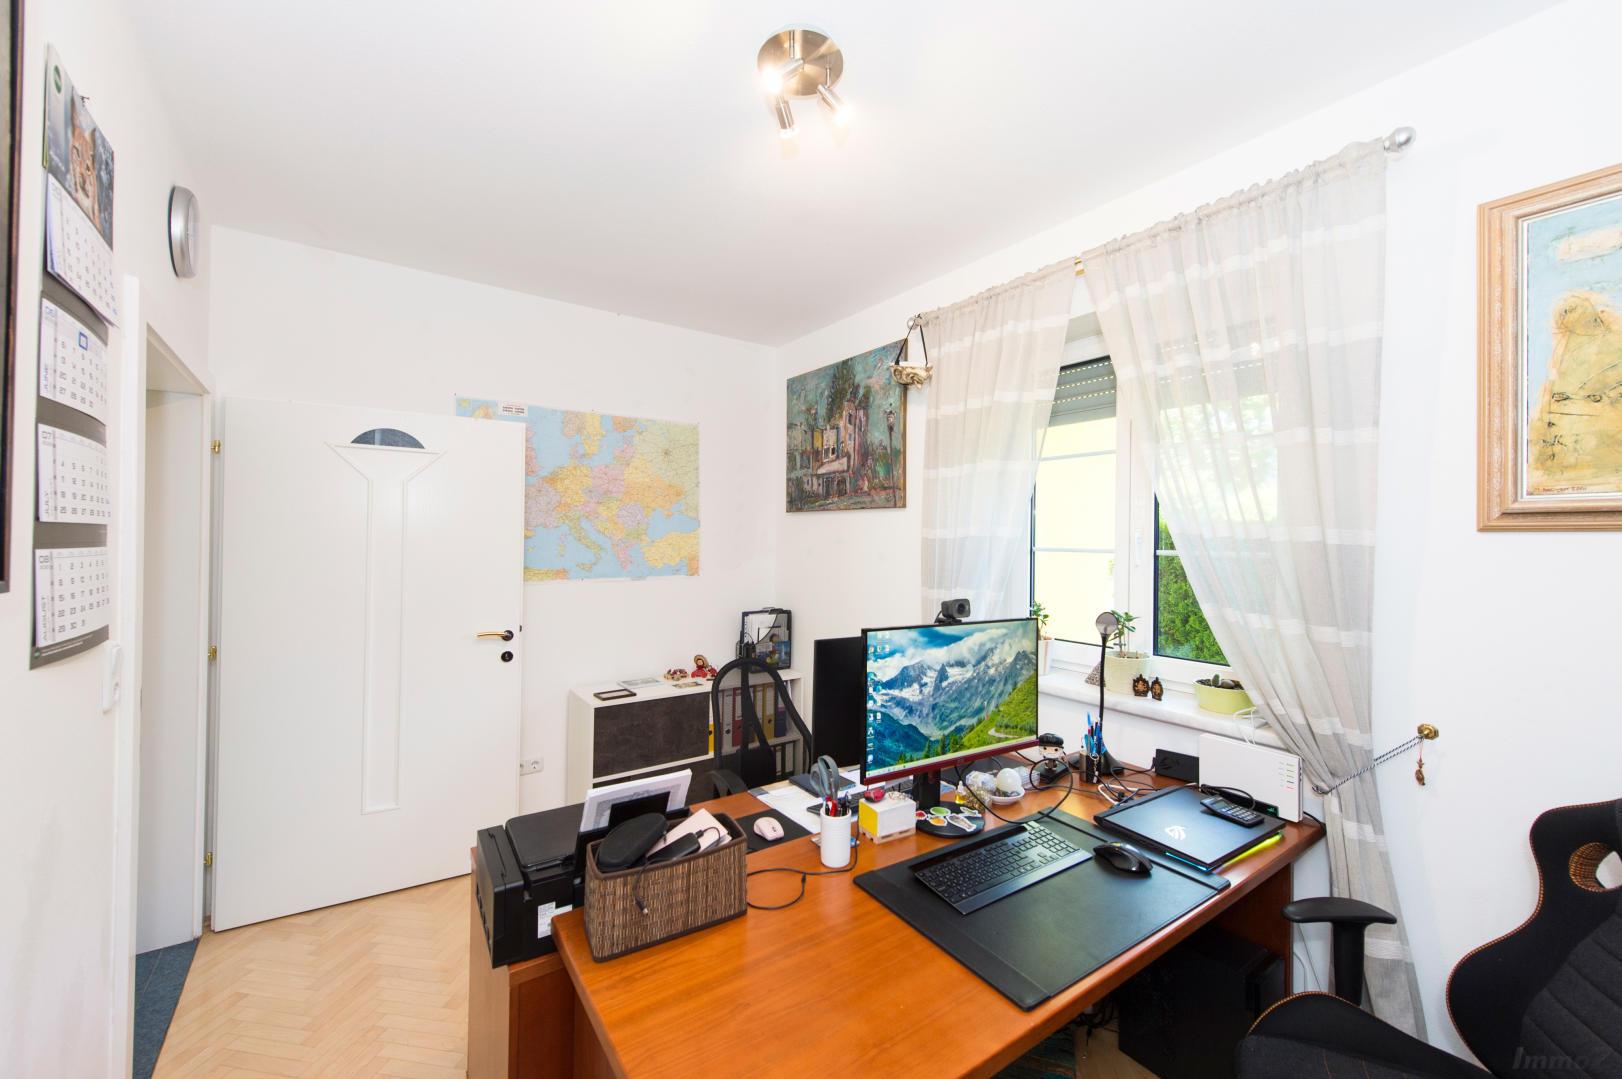 Haus zum Kaufen: Kogelbuch, 8302 Nestelbach bei Graz - Einfamilienhaus Graz Umgebung 31